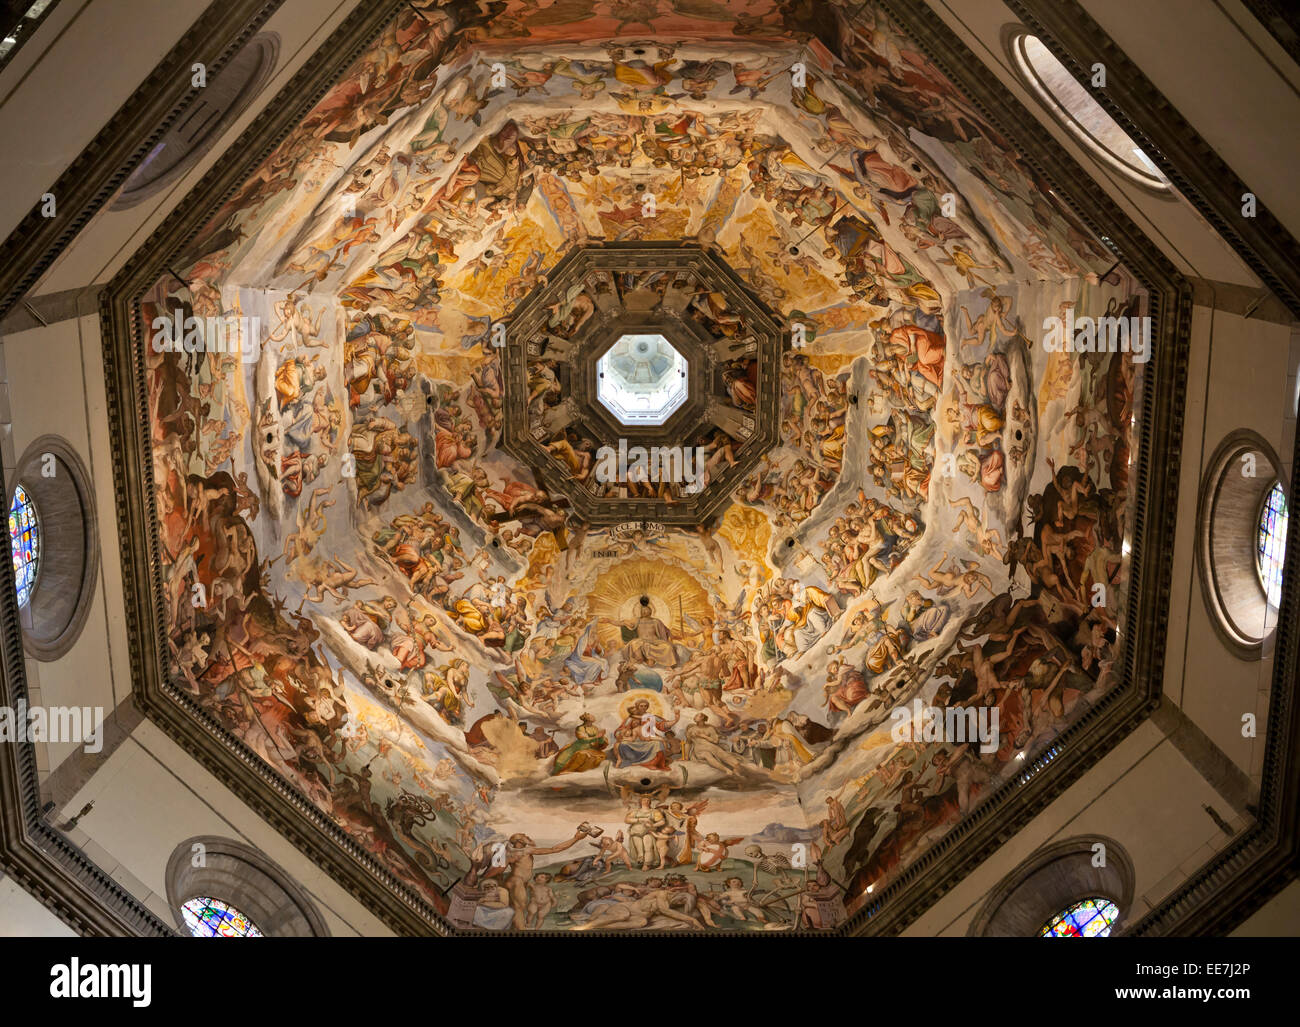 Florencia, Italia, la maravillosa obra maestra de El Día del Juicio, en el interior de la cúpula Foto de stock